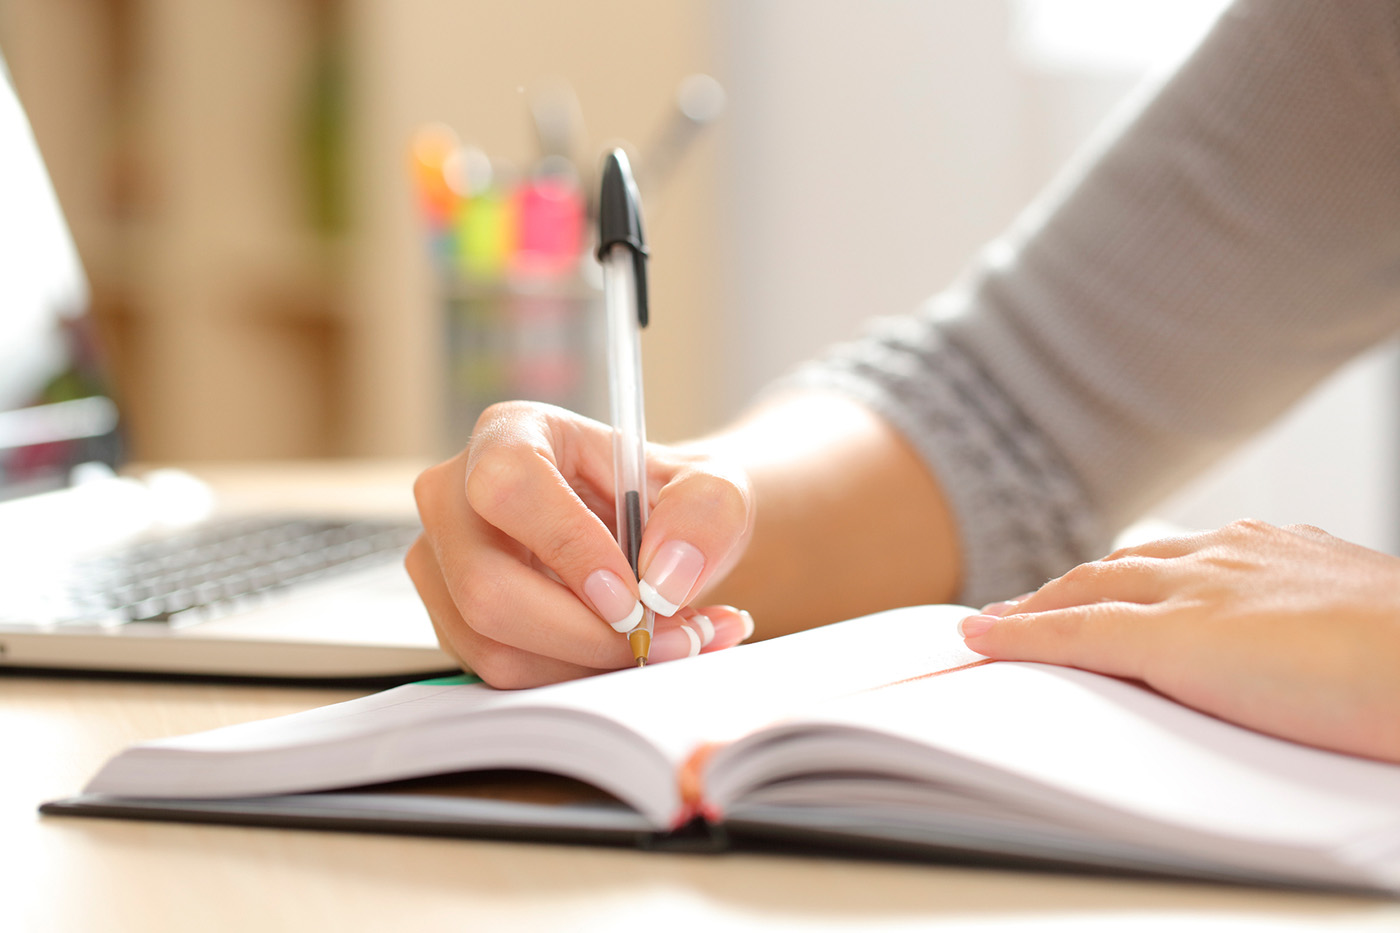 Ways to Improve Writing Skills